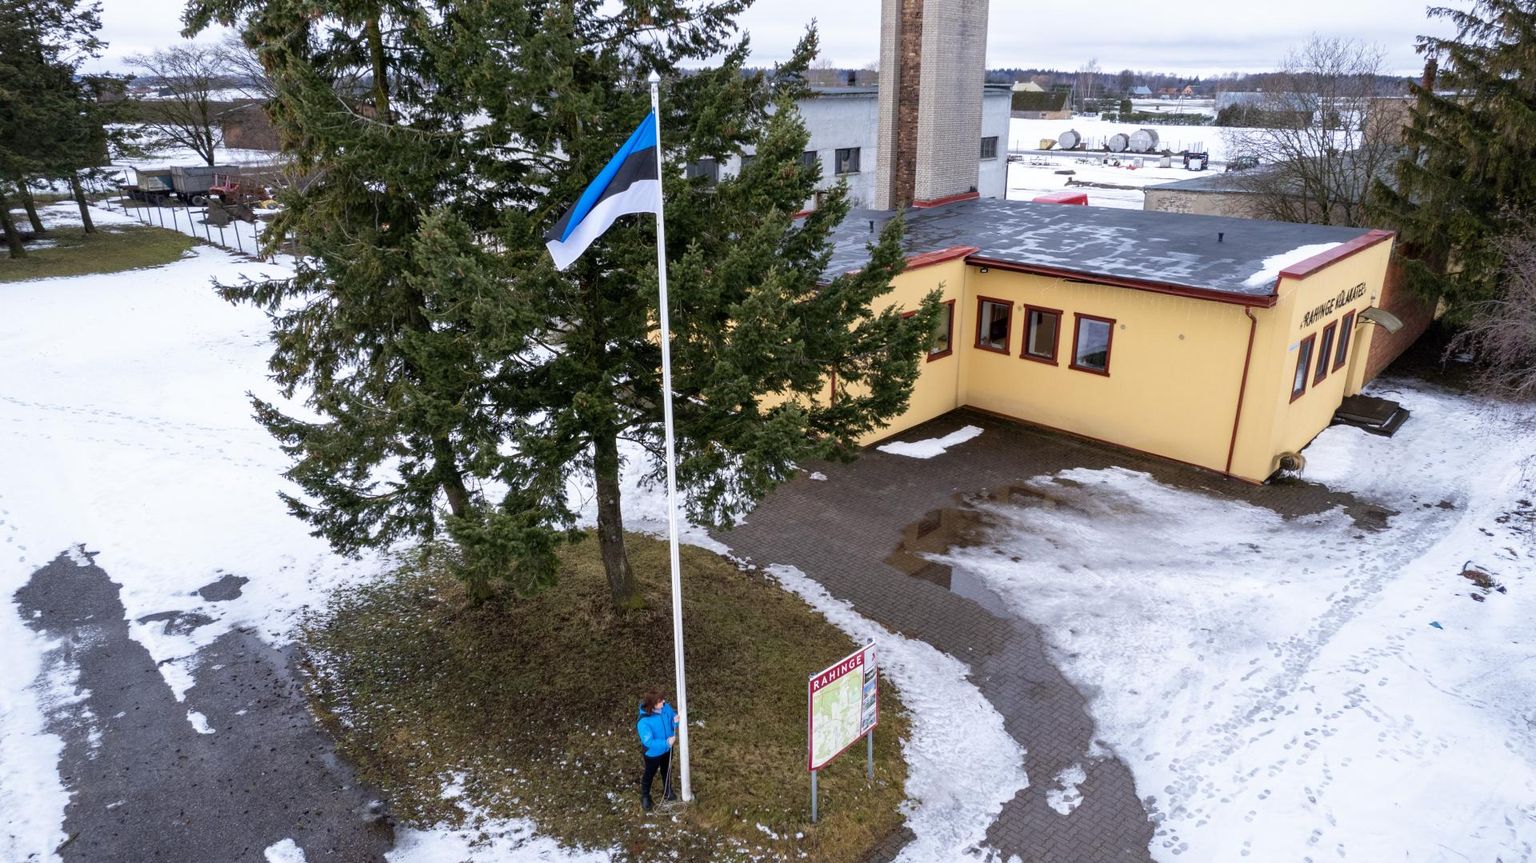 Rahinge külaseltsi eestvedaja Külli Pann usub, et ka väikestes kohtades tahavad inimesed Eesti sünnipäeval välja tulla ja pidulikku tunnet üksteisega jagada.